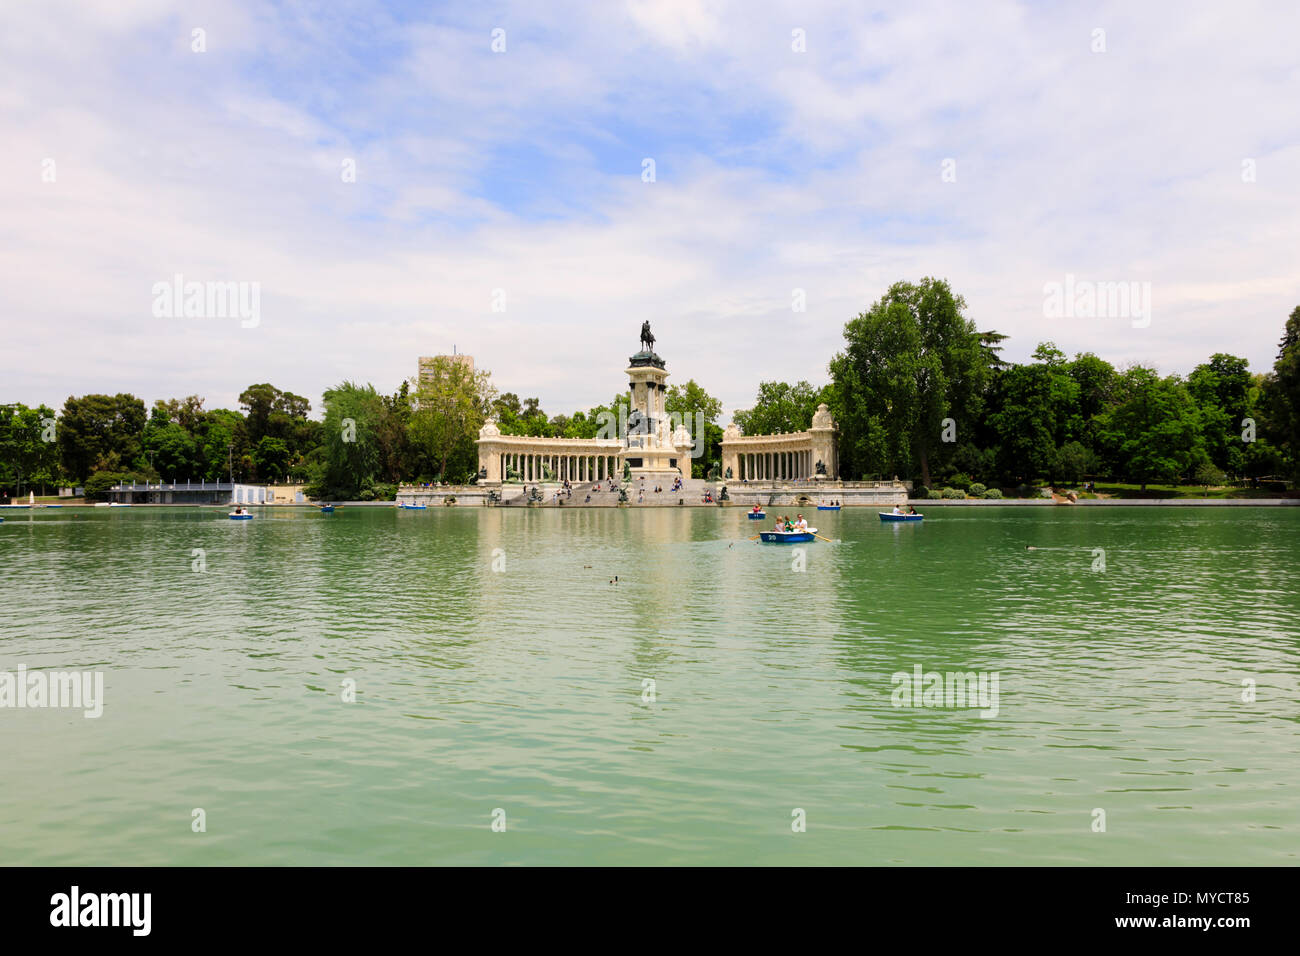 Il re Alfonso XII monumento e gite in barca sul lago, Parque del Buen Retiro, Madrid, Spagna. Maggio 2018 Foto Stock